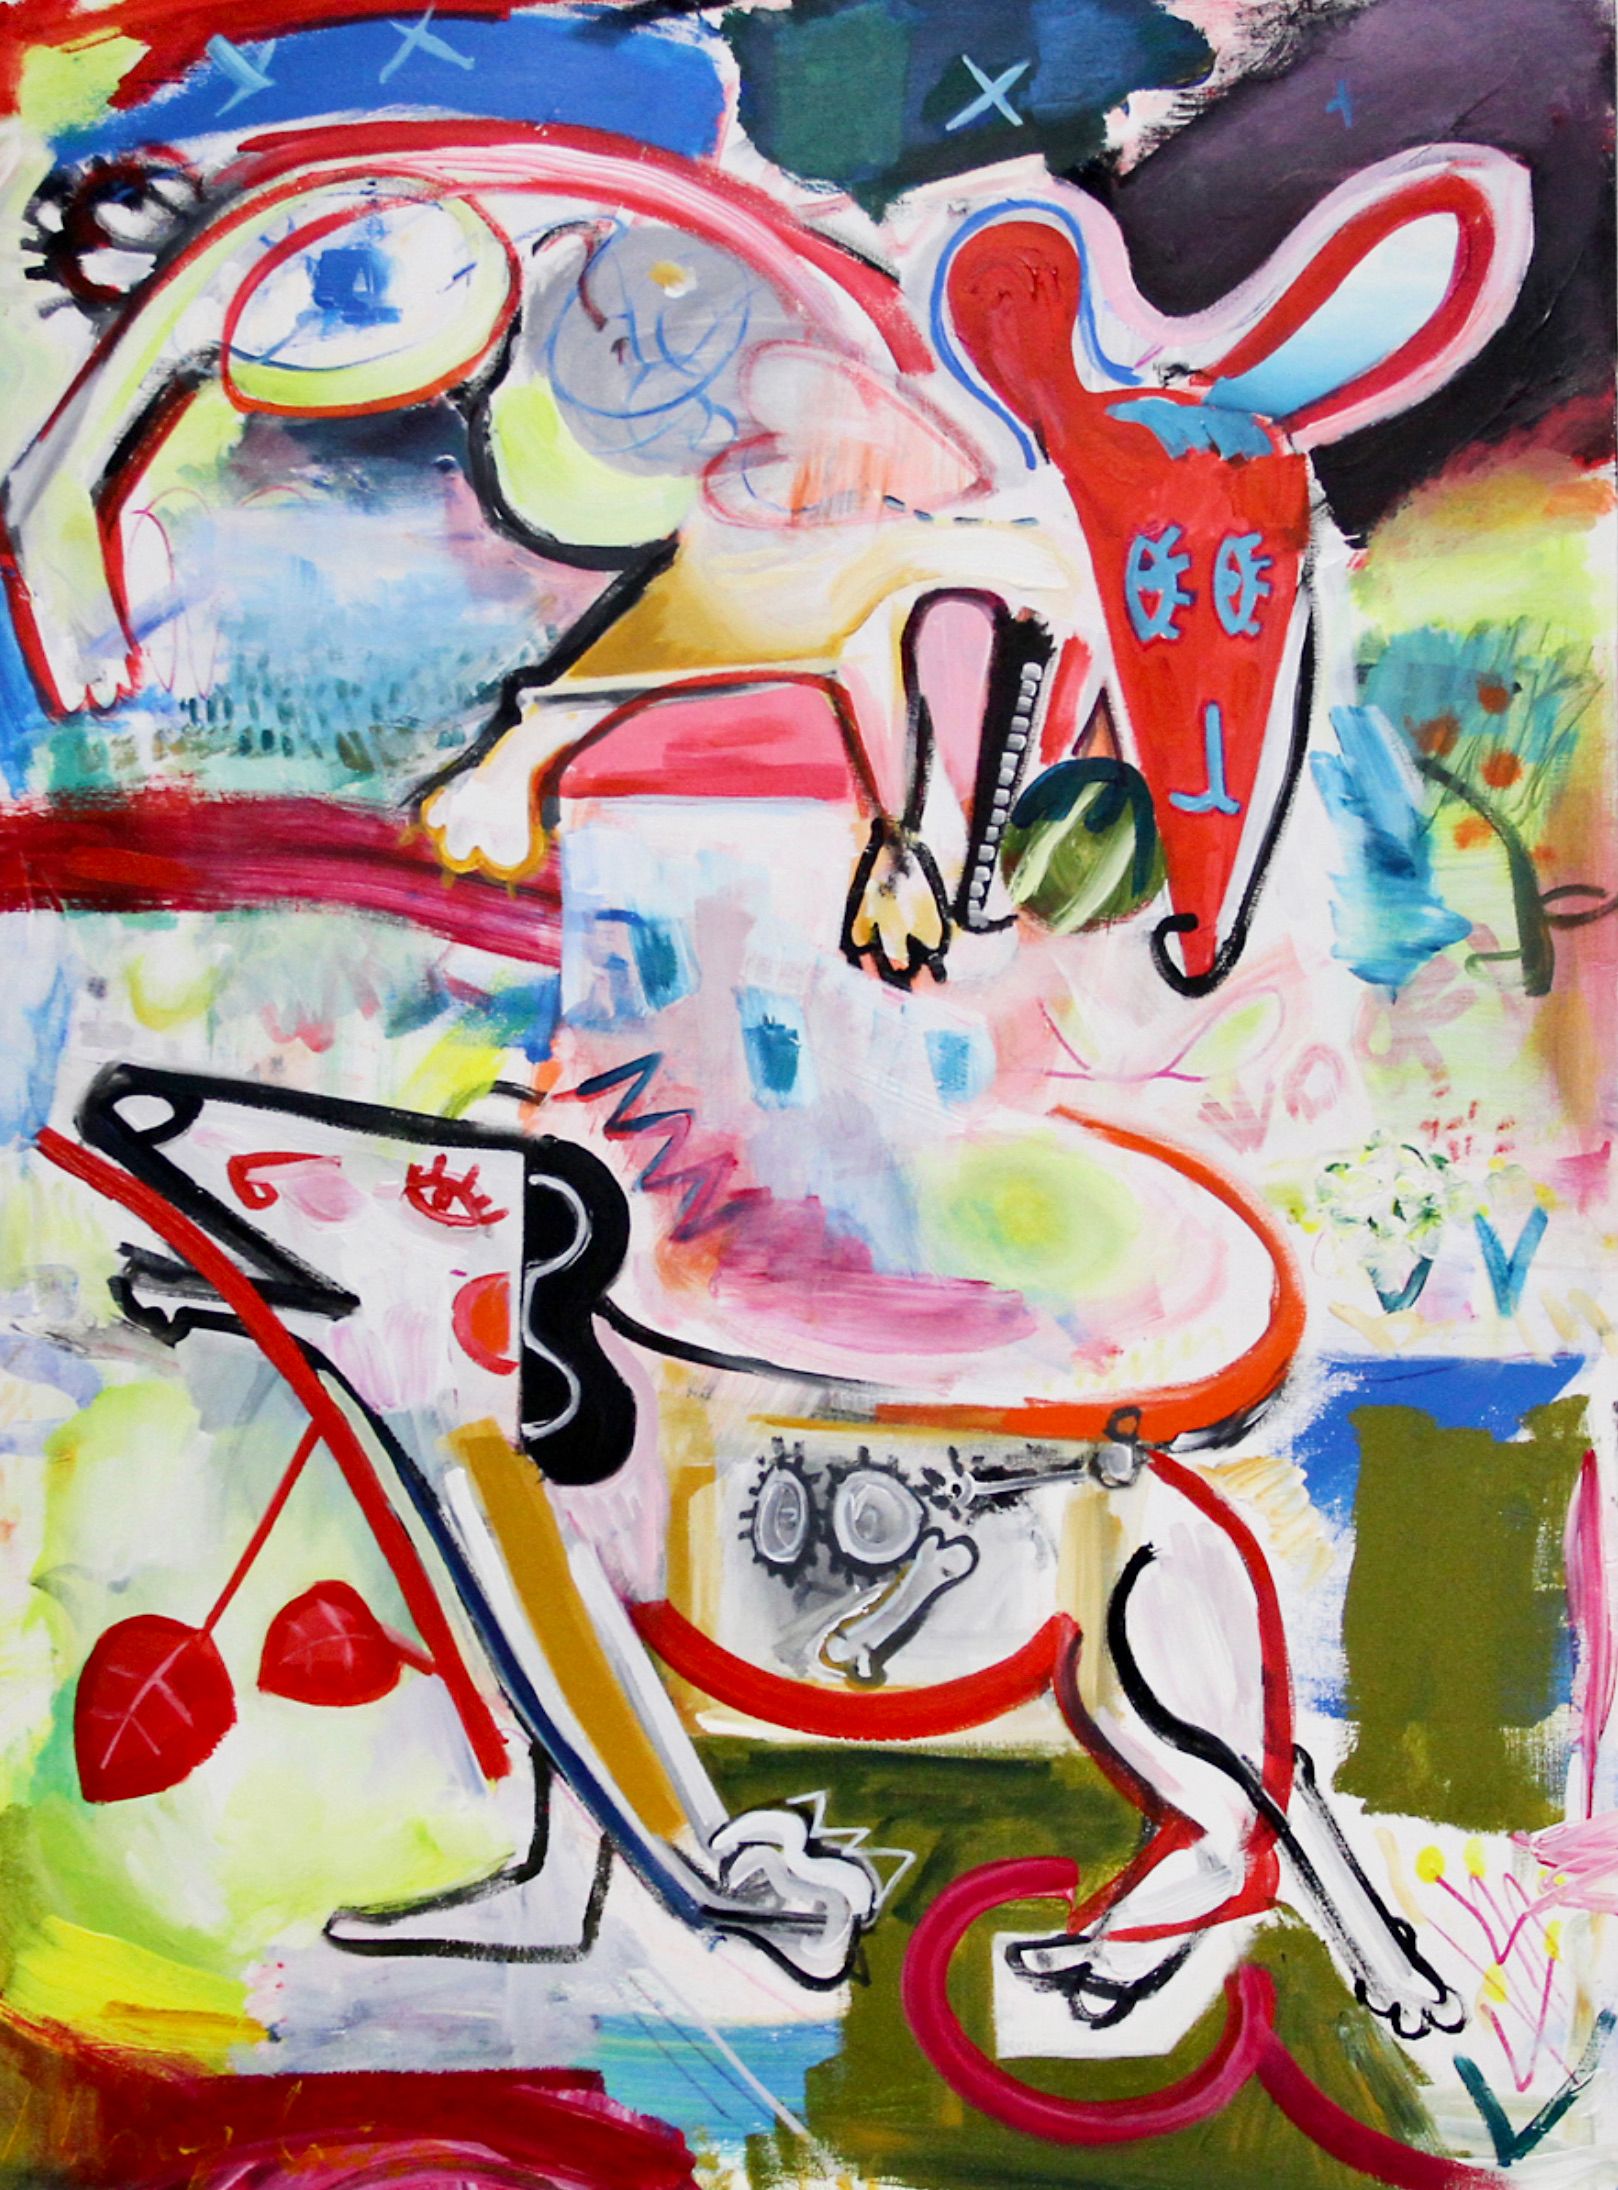 MECESLA Maciej Cieśla, "Dos perros salchicha", Pintura abstracta de colores sobre lienzo